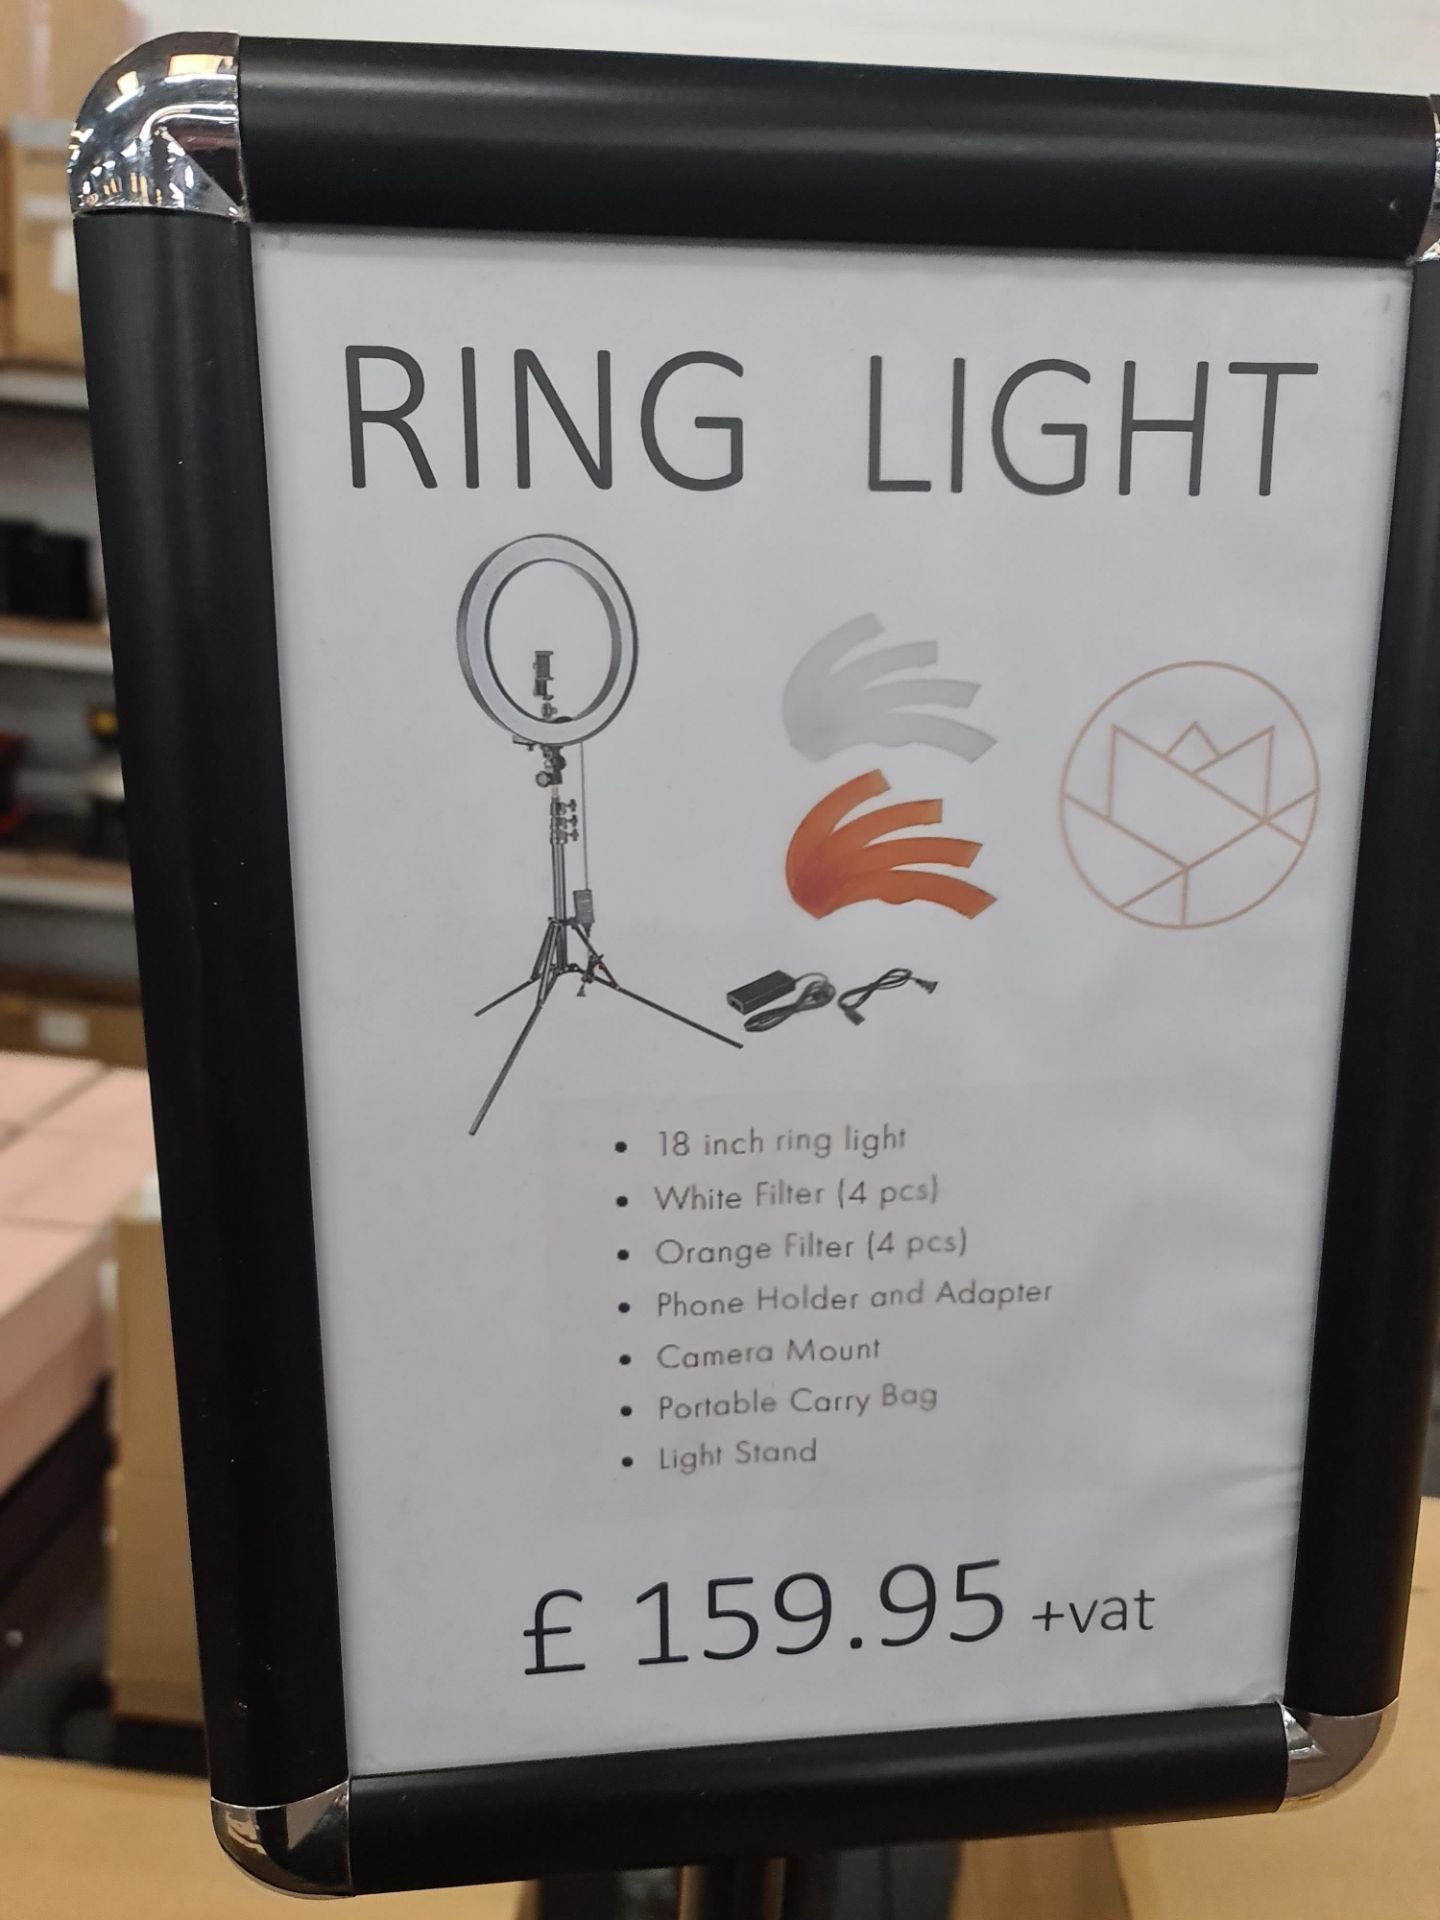 Floor standing tripod based ring light